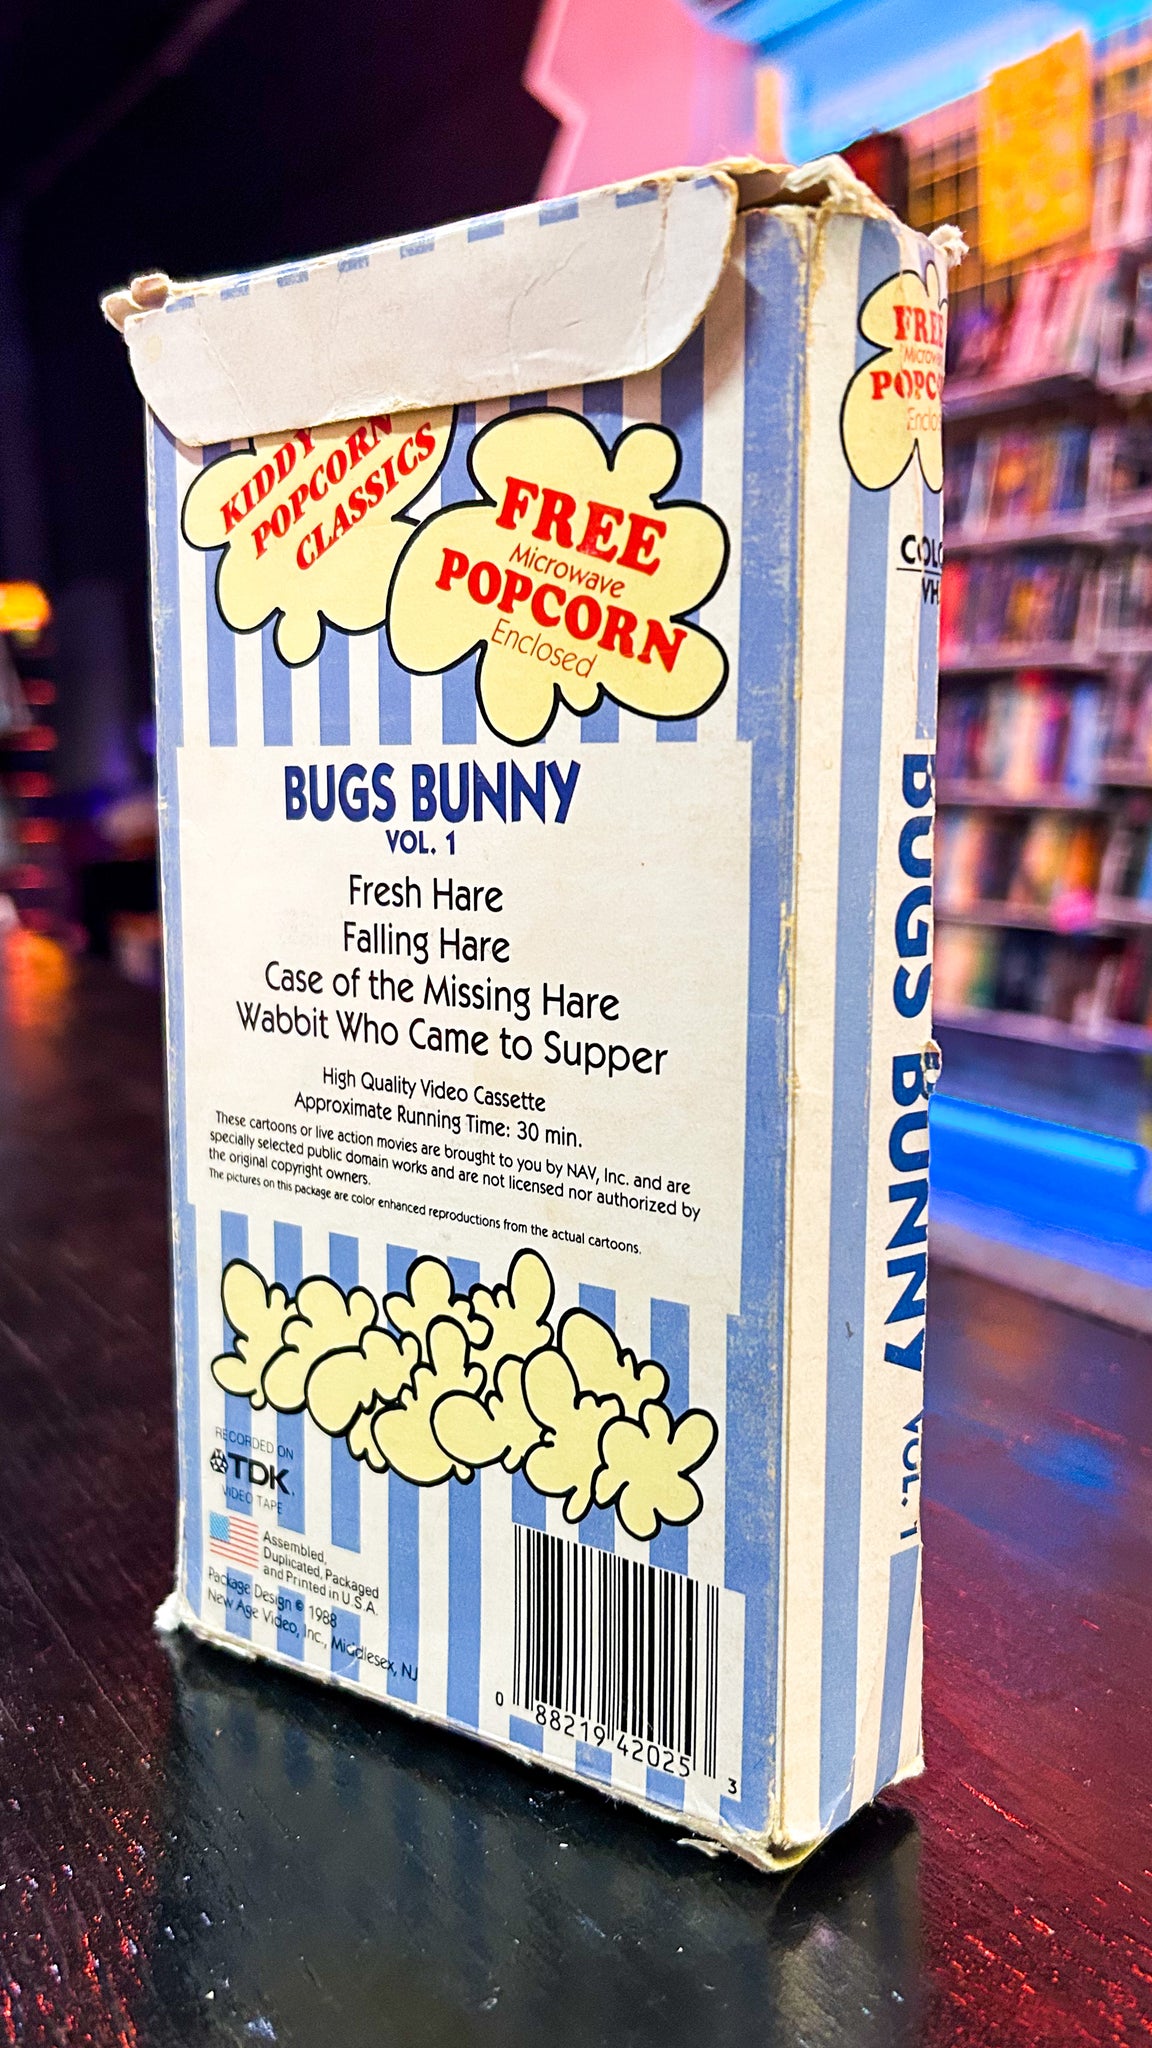 Kiddy Popcorn Classics: Bugs Bunny Vol. 1